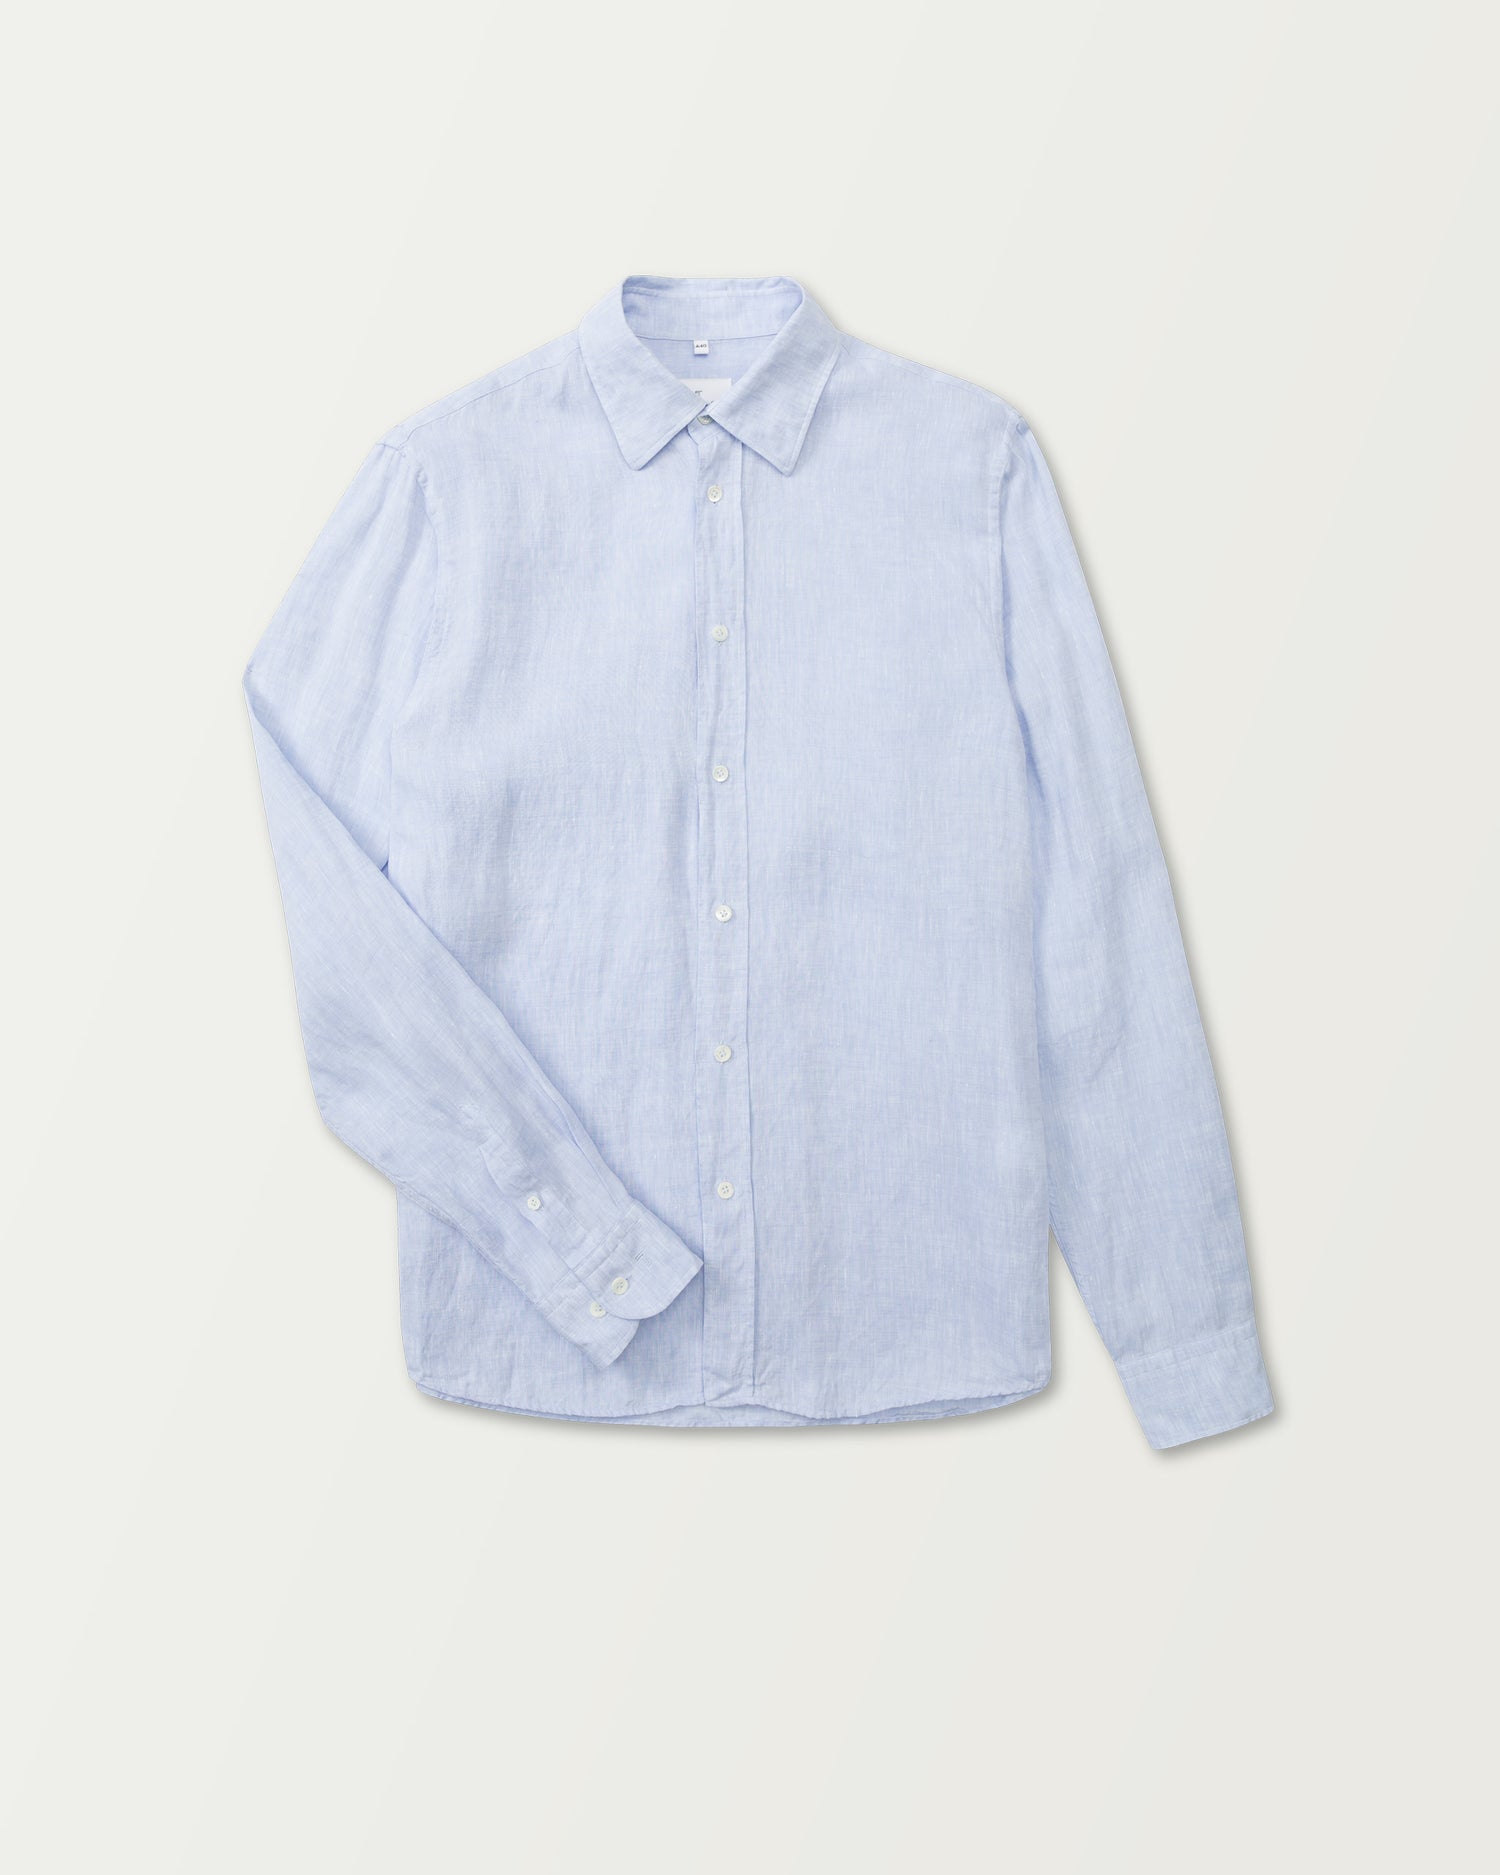 Summer Shirt in Light Blue Linen (8669648093514)